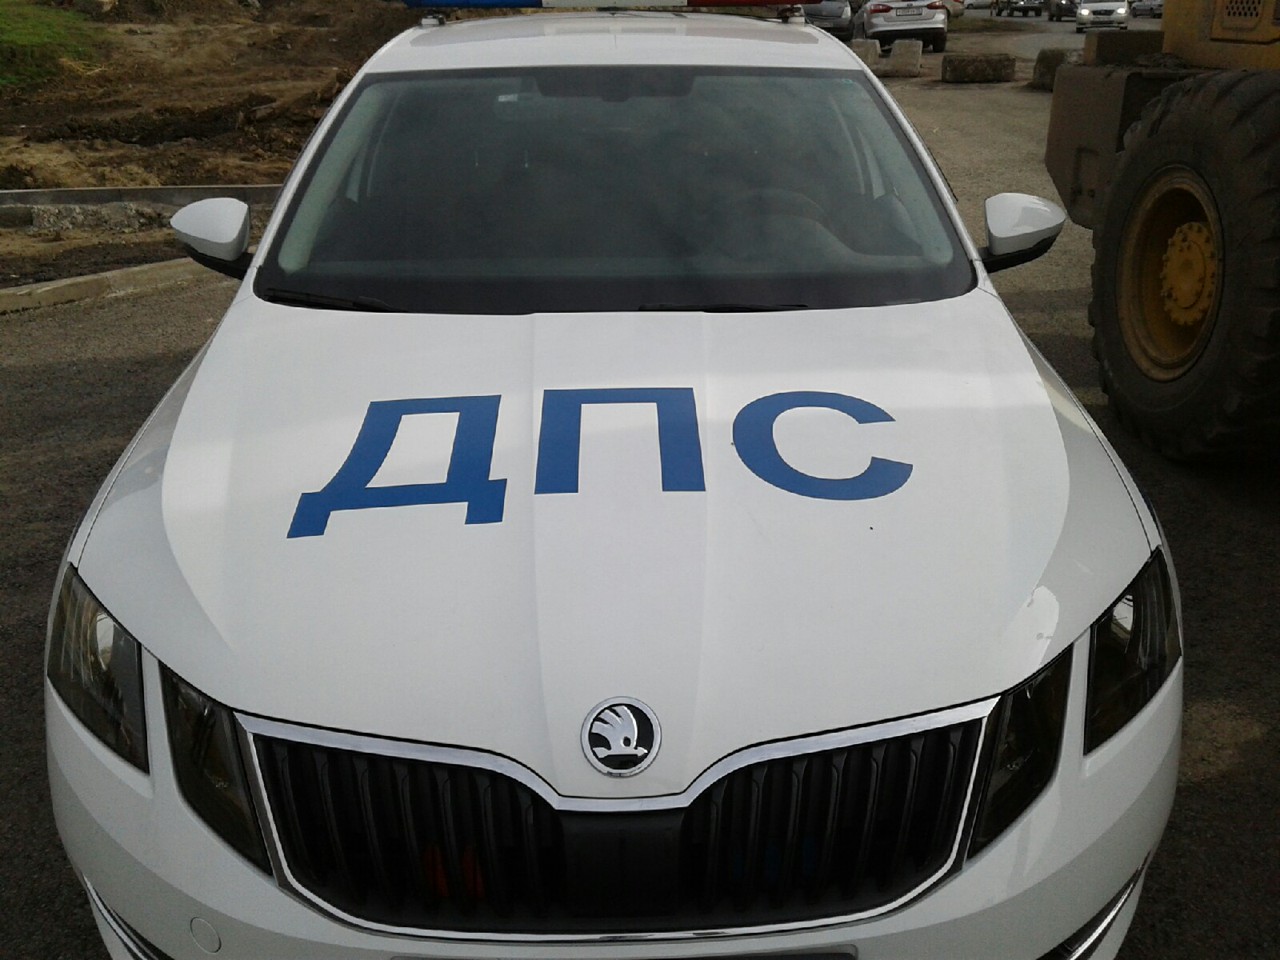 Омскому водителю, из-за которого погибли 4 человека, вынесли мягкий приговор #Омск #Общество #Сегодня